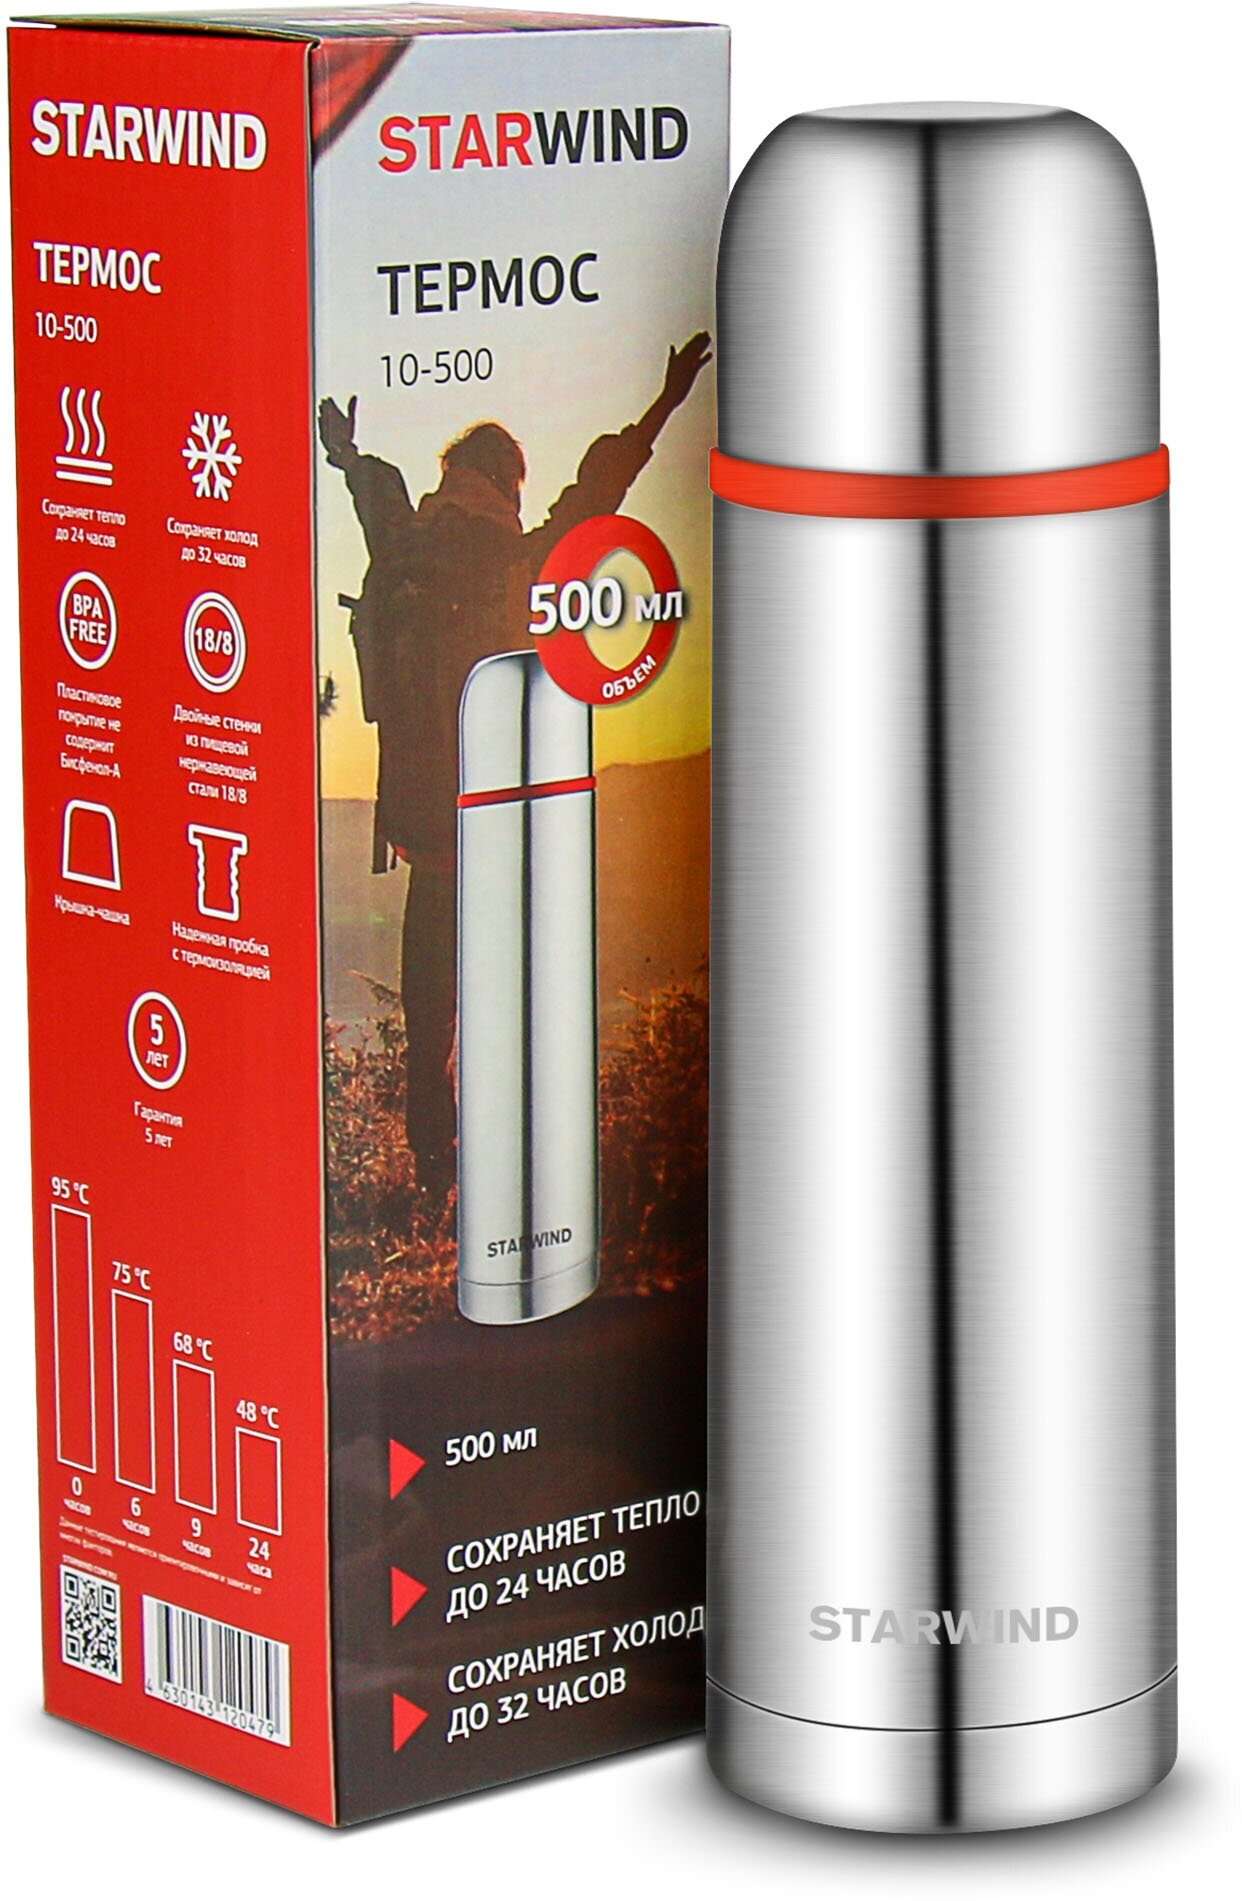 Термос для напитков Starwind 10-500 0.5л. серебристый/красный картонная коробка - фотография № 7